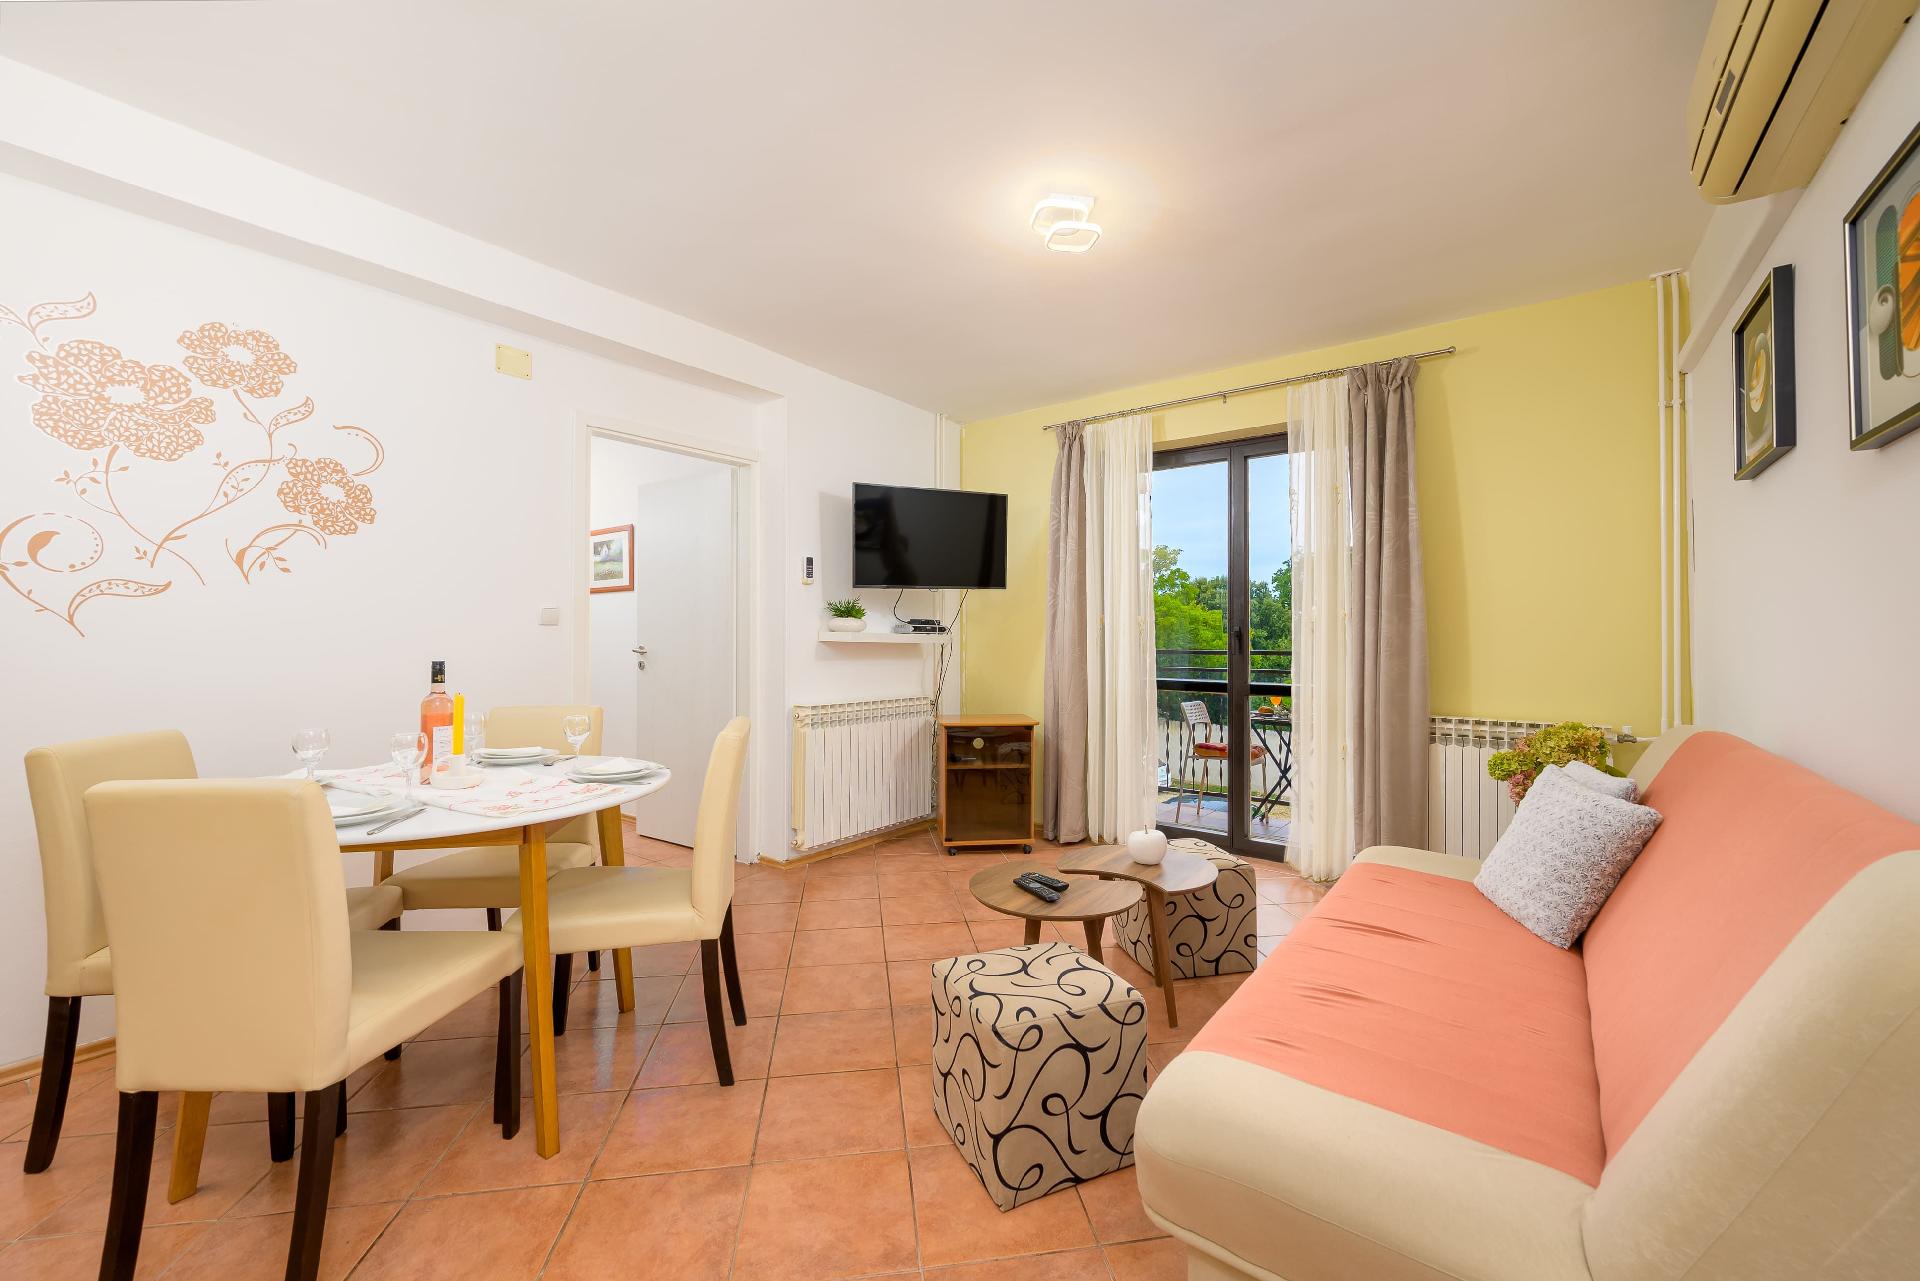 Ferienwohnung für 4 Personen ca. 64 m² i Ferienhaus in Kroatien